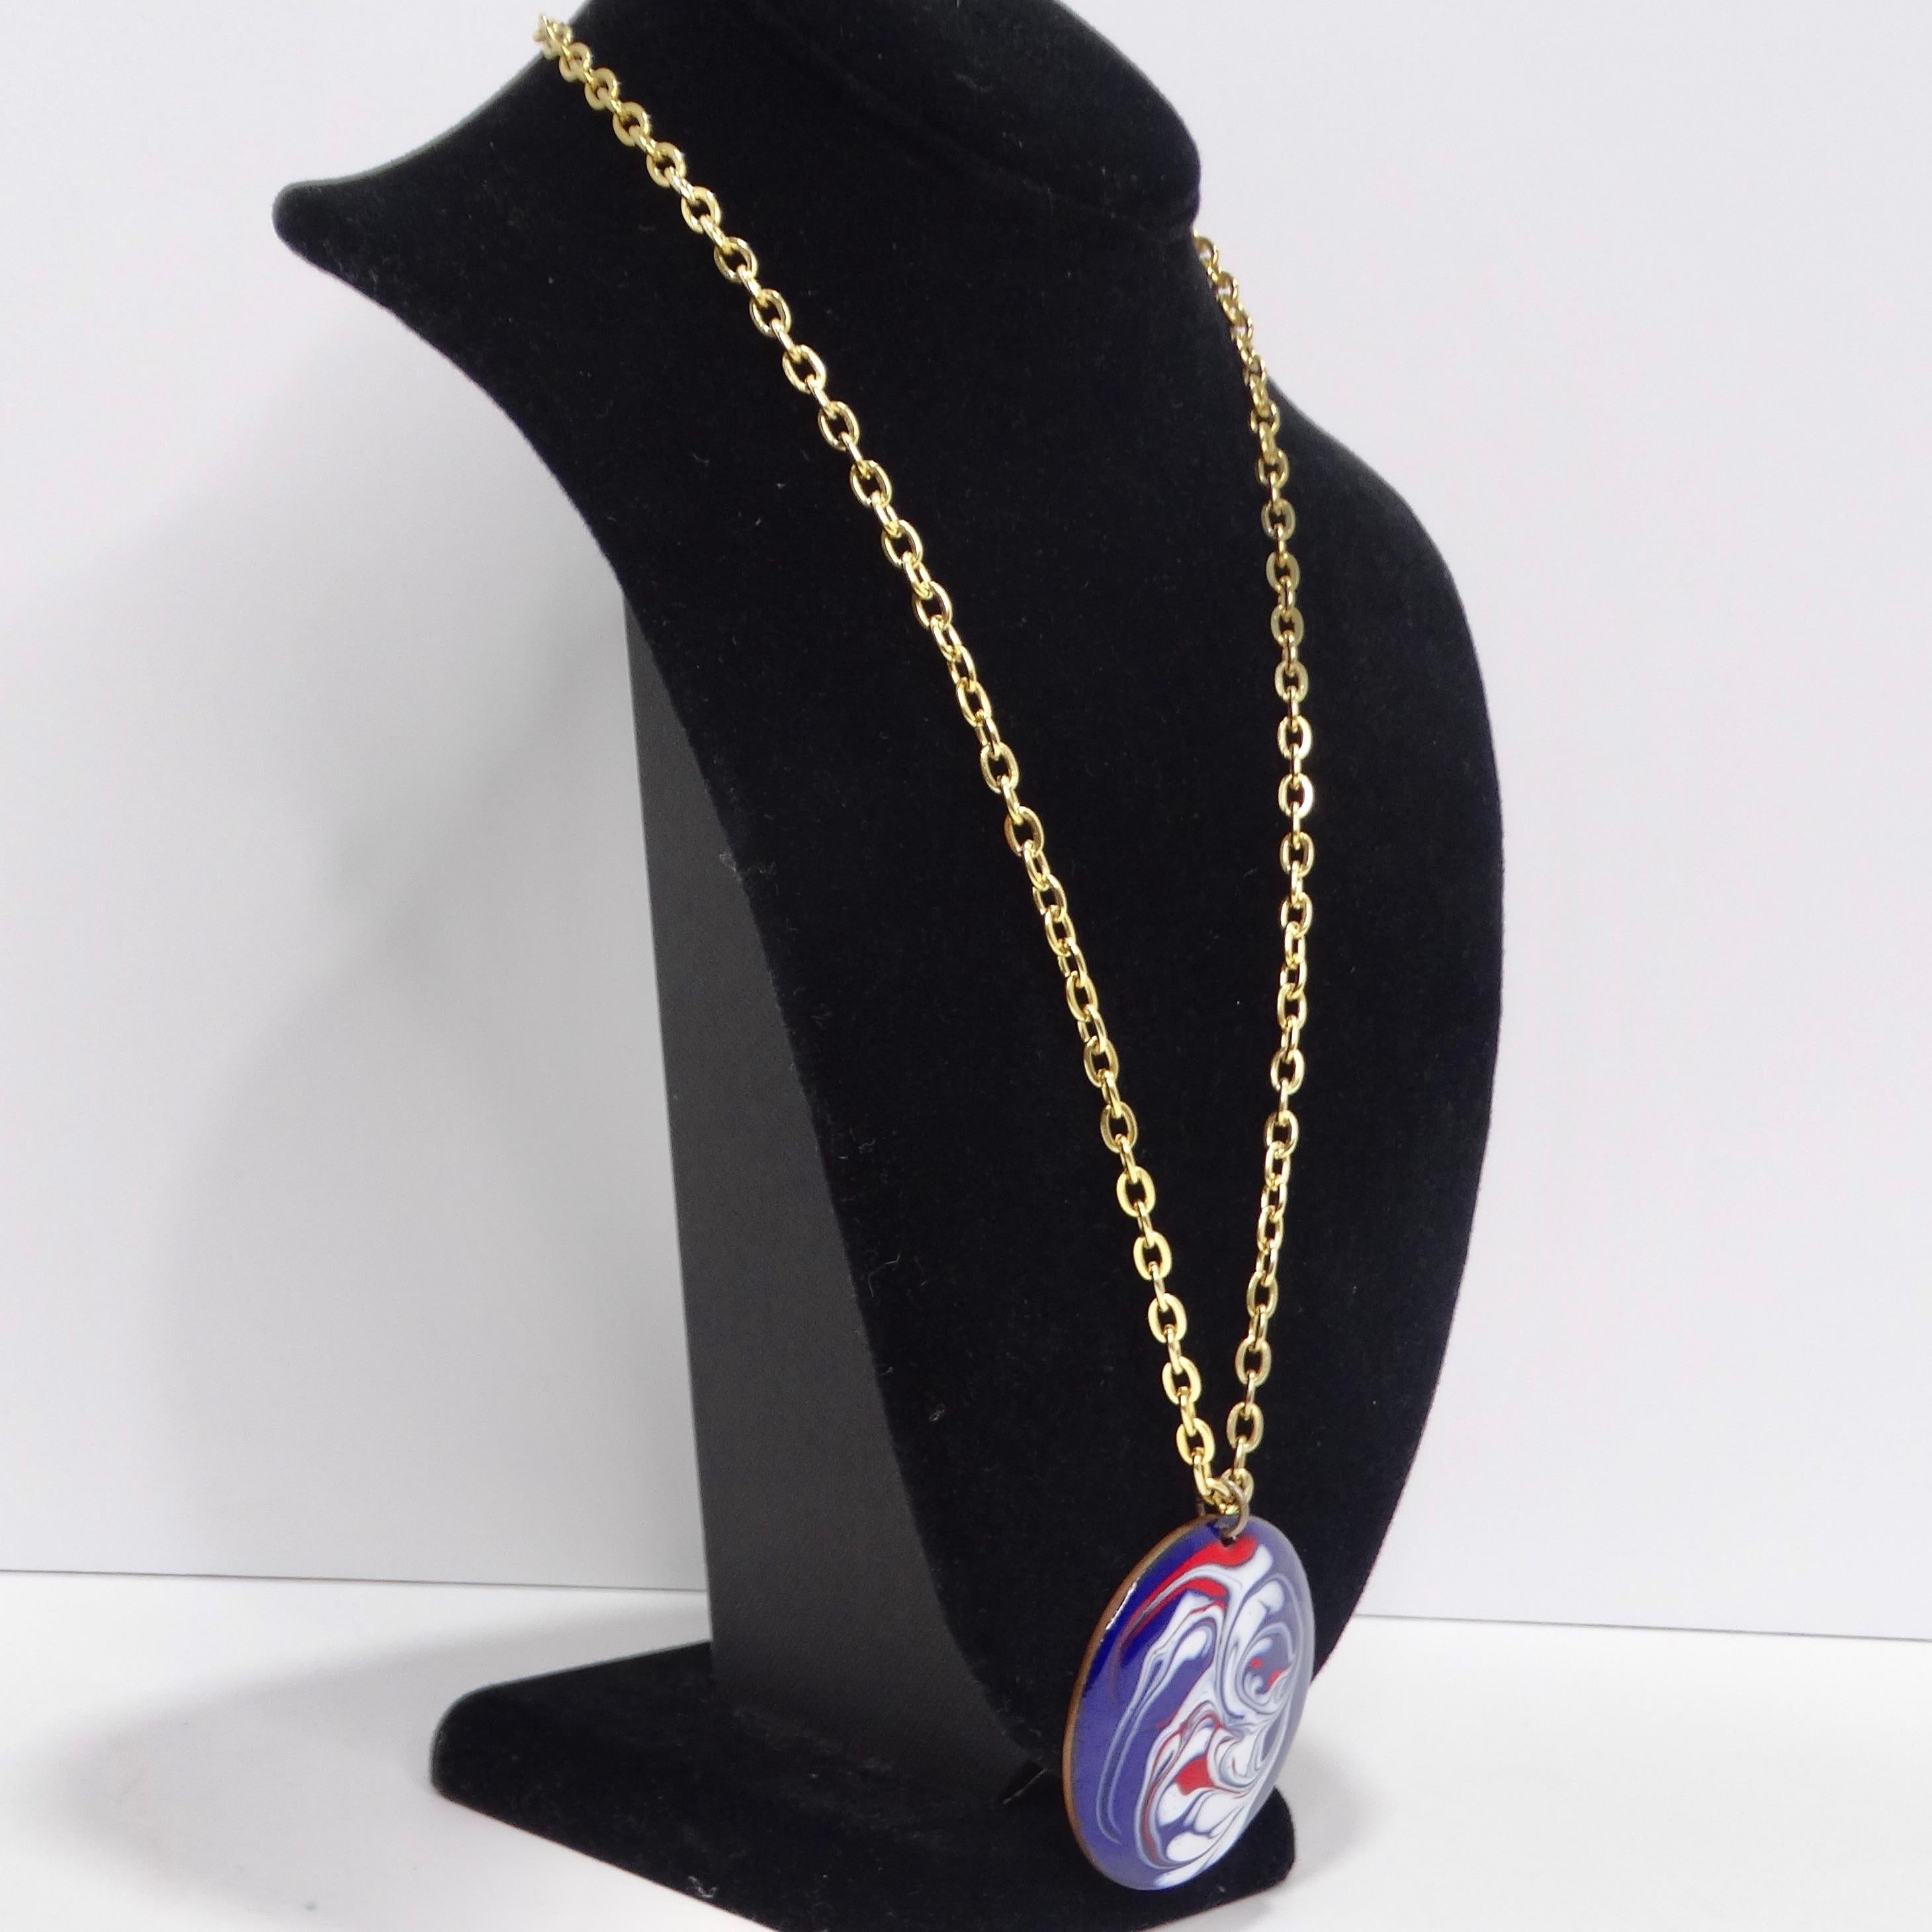 Adoptez le charme du vintage avec ce collier à pendentif marbre bleu plaqué or 18K des années 1980. Ce collier classique à chaîne en or présente un pendentif circulaire audacieux avec un effet captivant de marbre rouge, blanc et bleu. Véritable